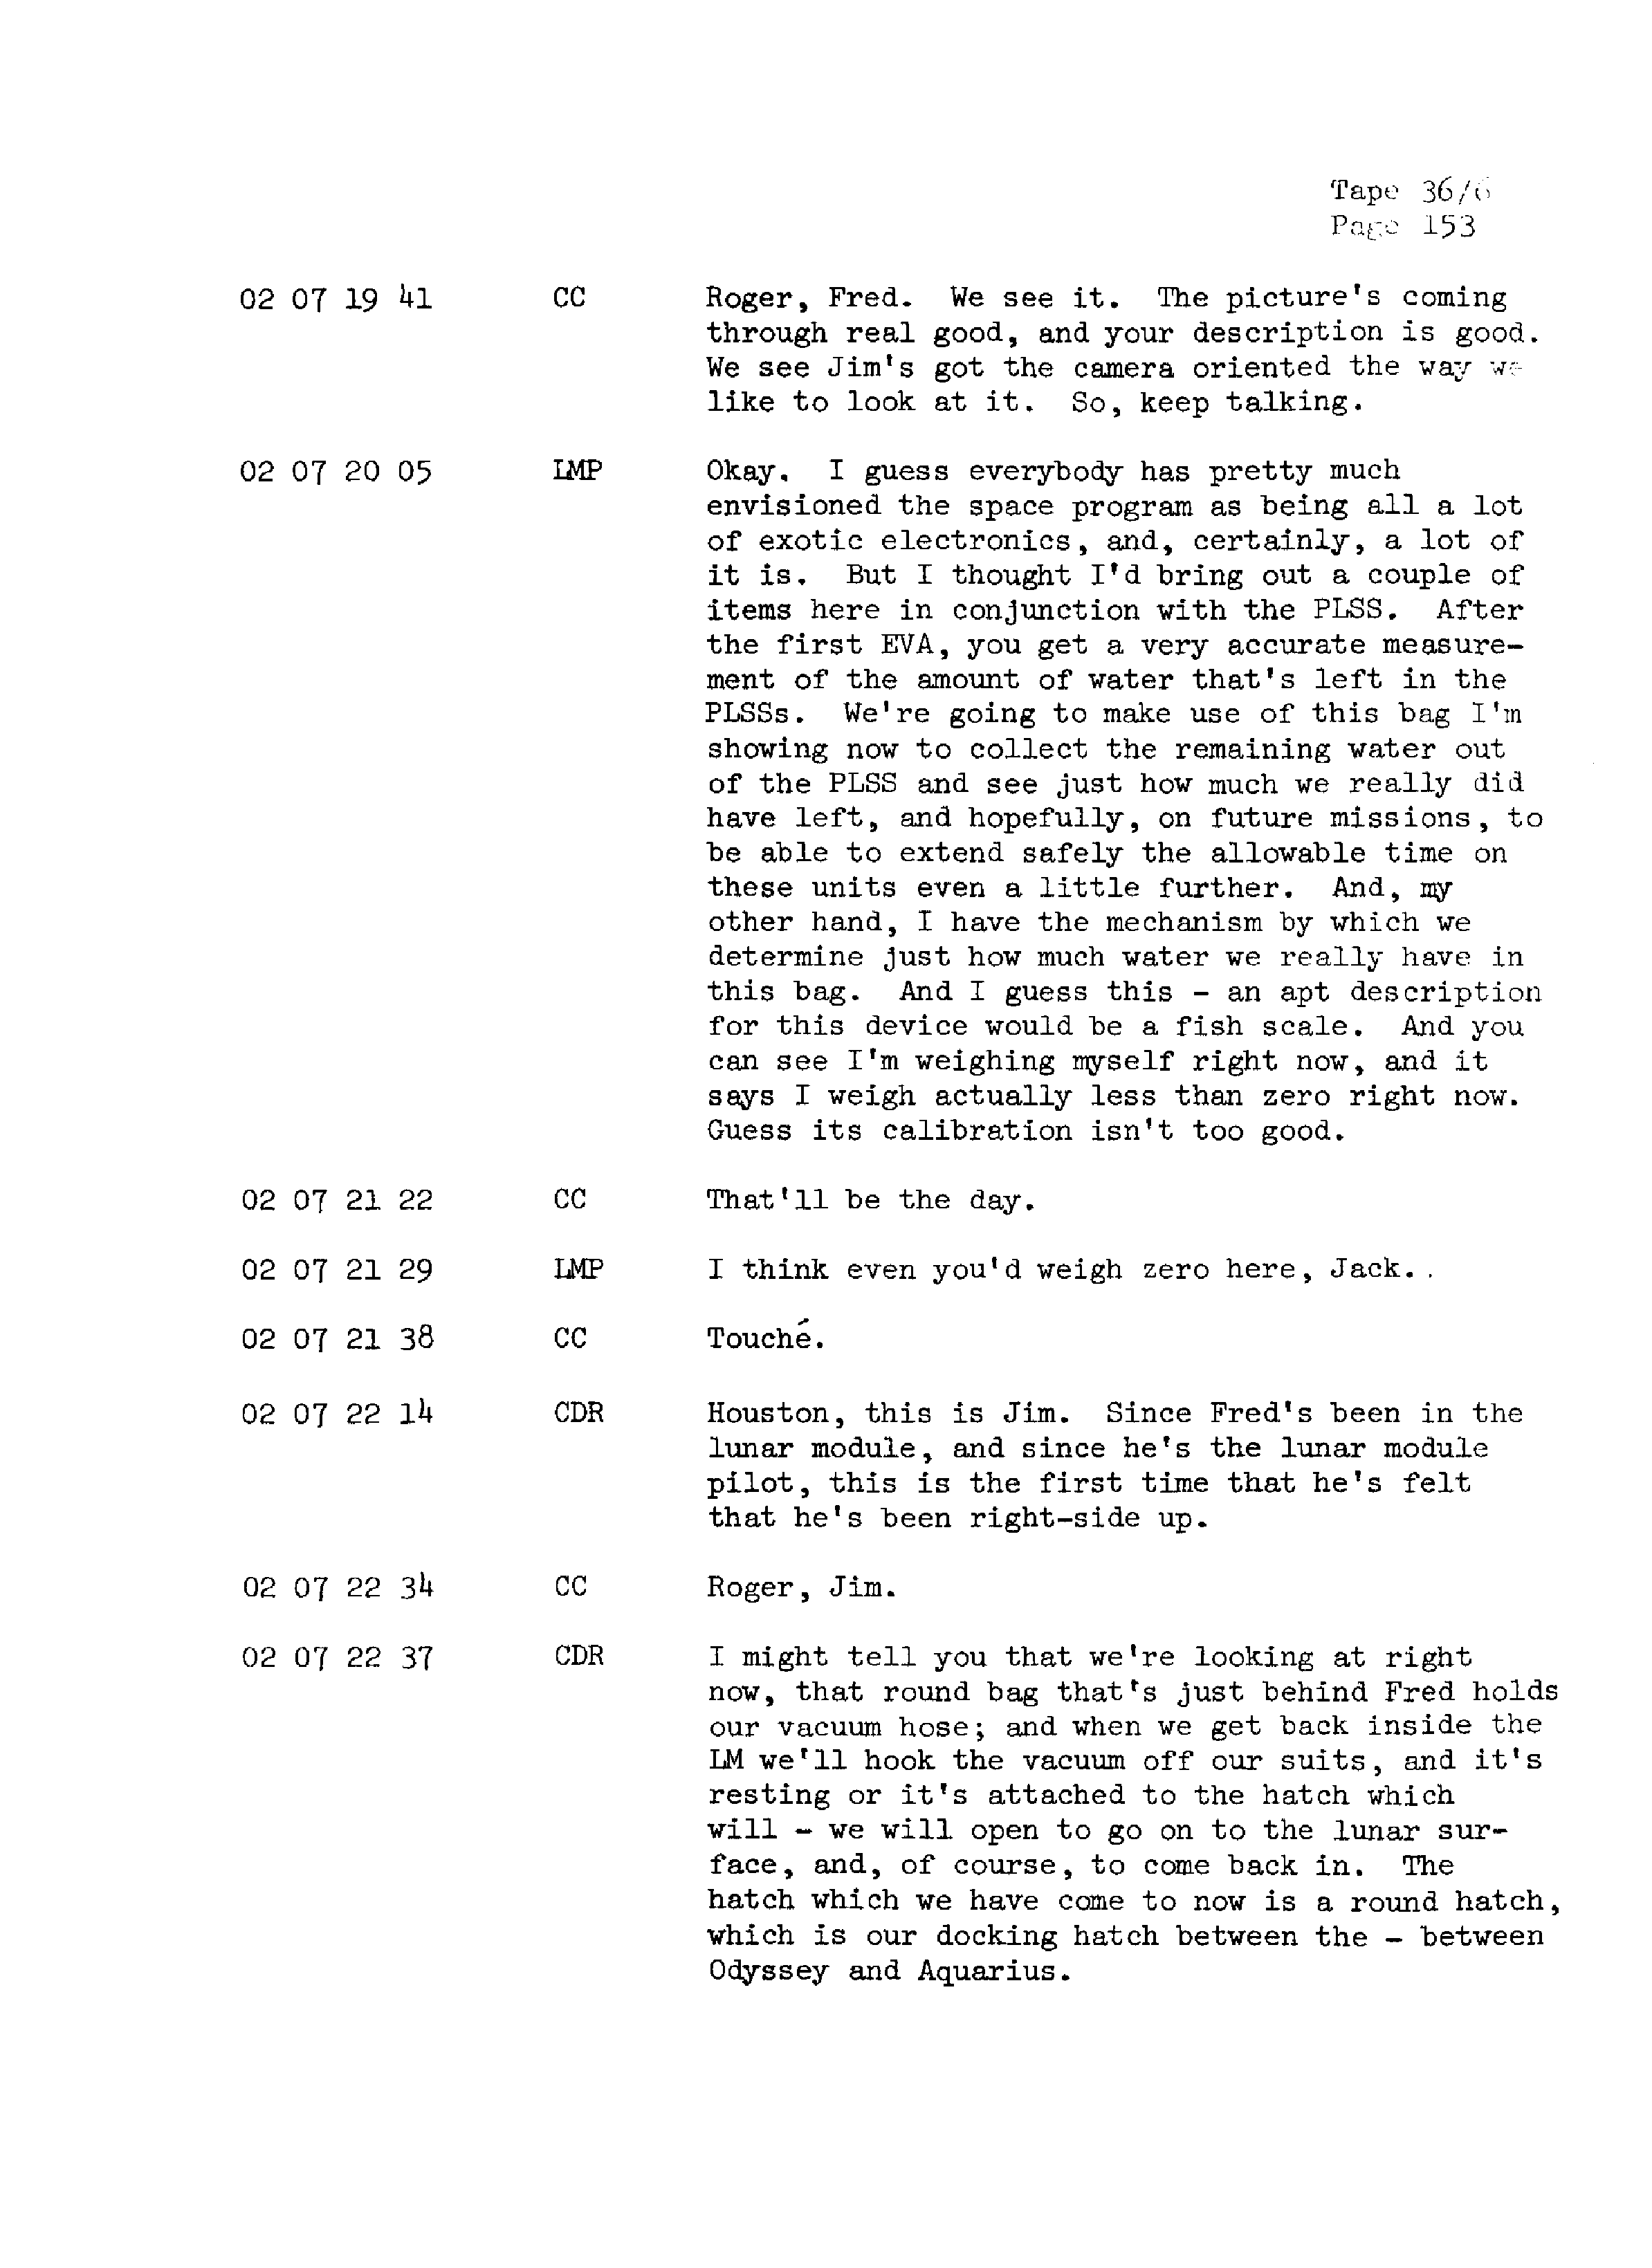 Page 160 of Apollo 13’s original transcript